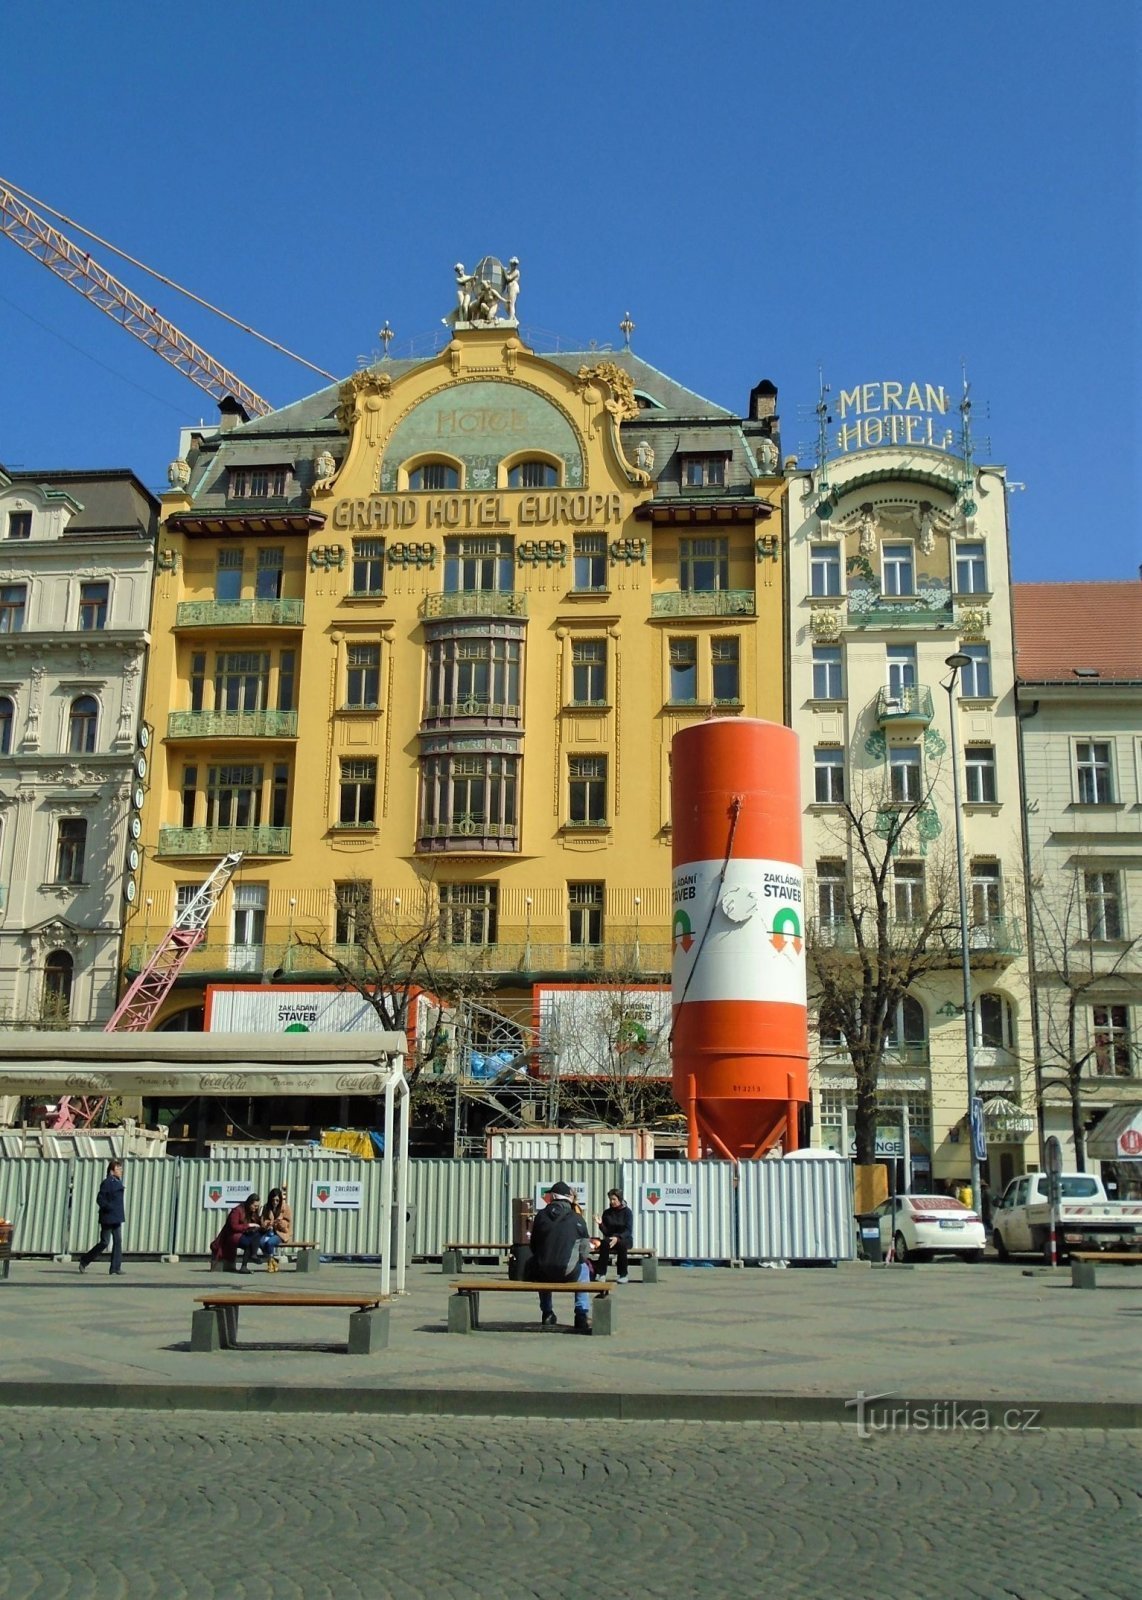 Grand Hotel Evropa và Hotel Meran (Prague, ngày 1.4.2019 tháng XNUMX năm XNUMX)